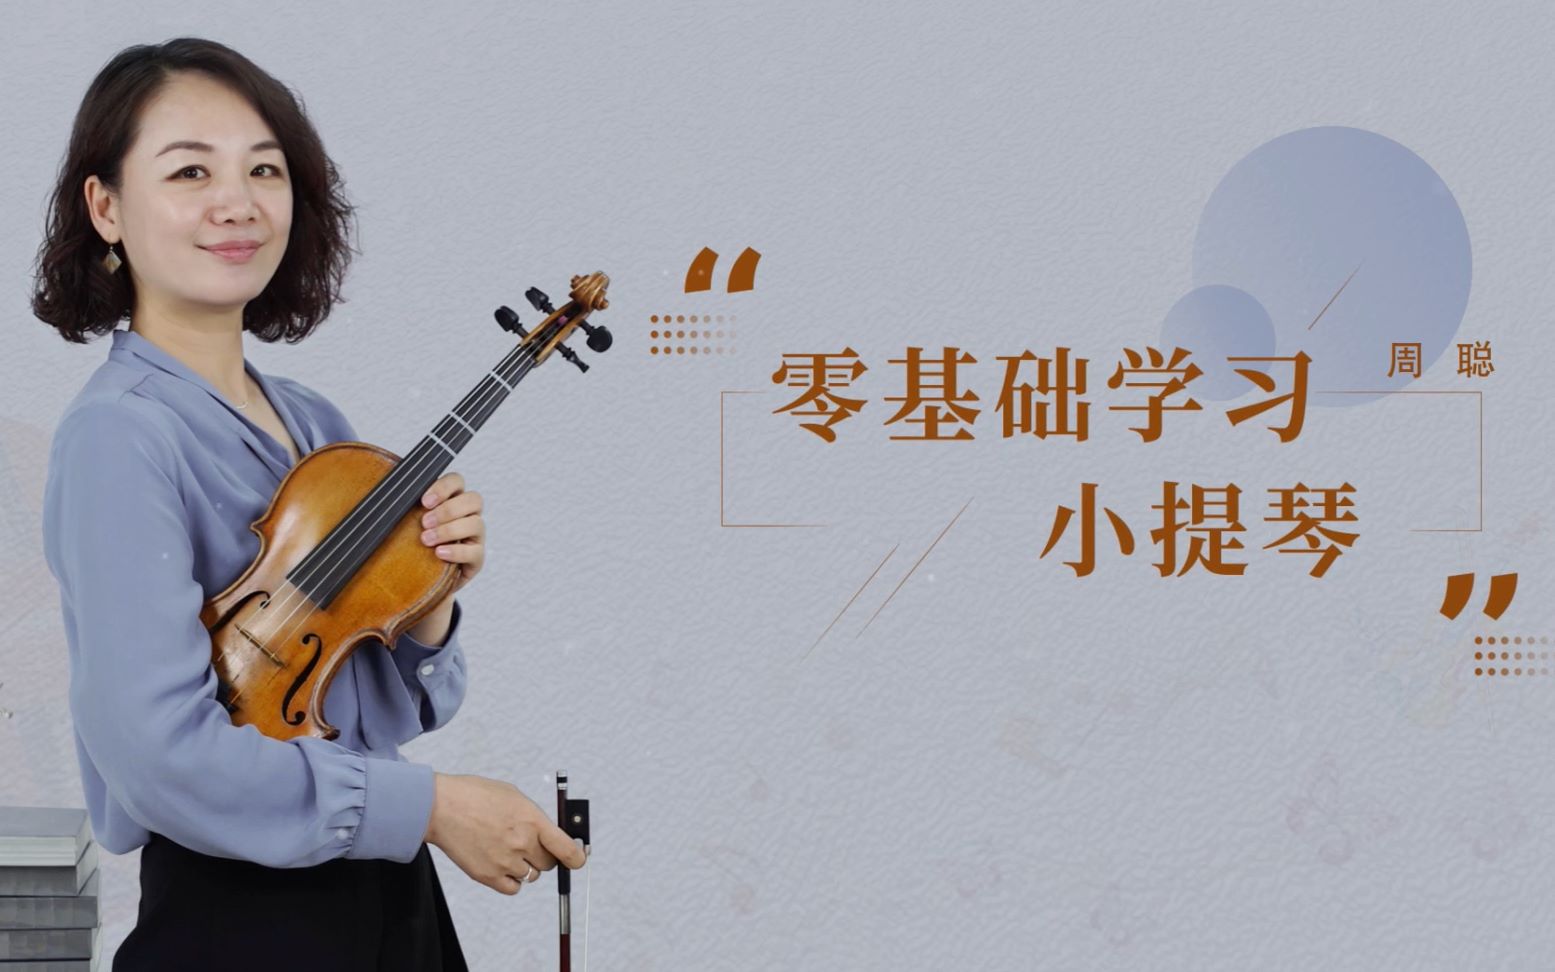 浙江大学周聪老师喊你来上小提琴课啦 | 《零基础学习小提琴》第九、十章